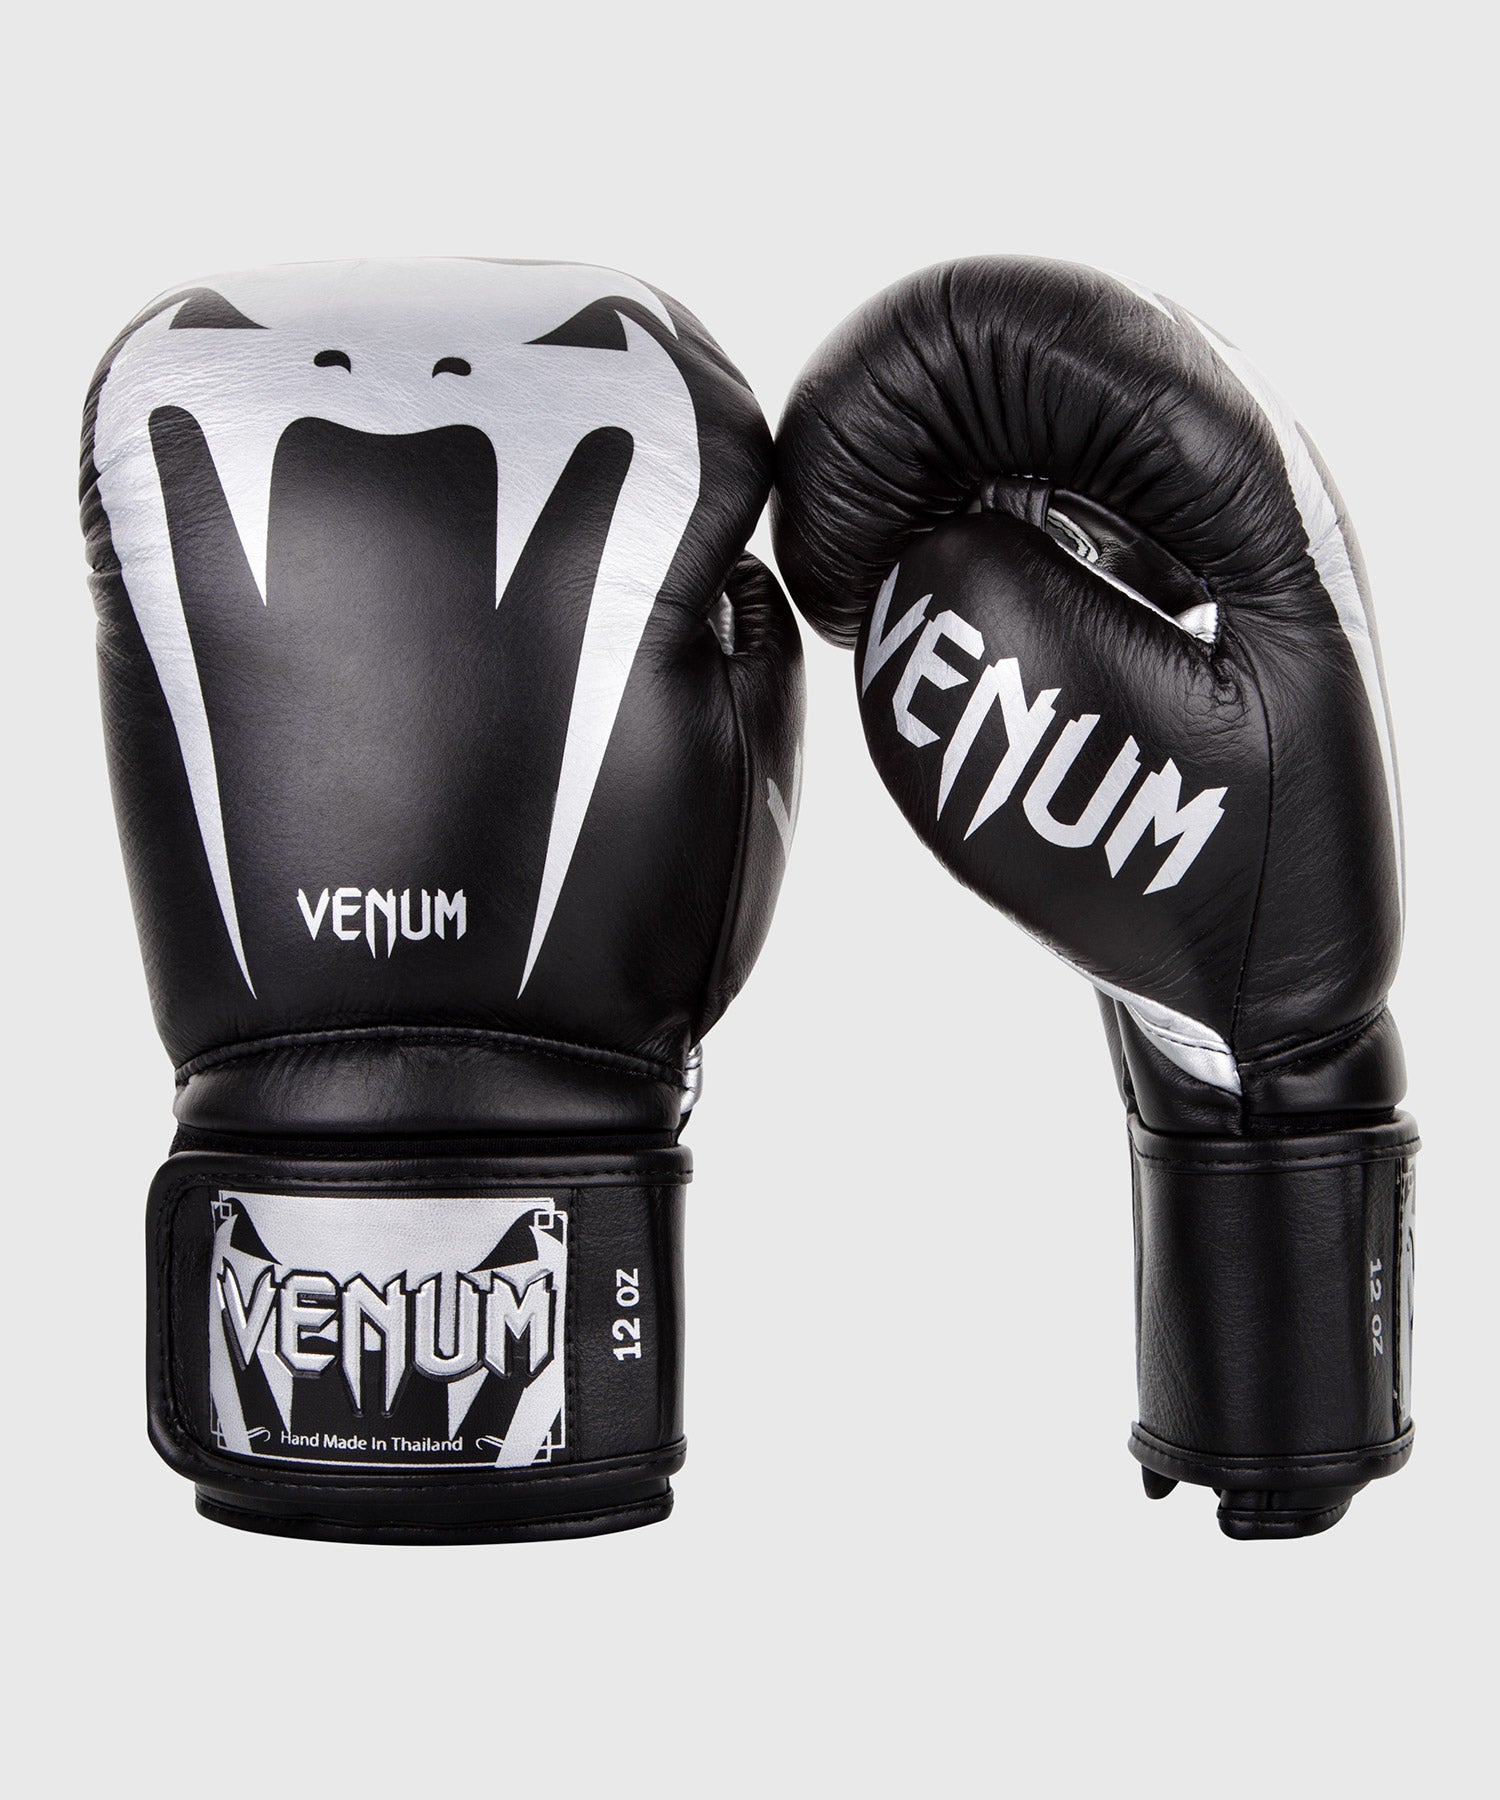 Gants de boxe Venum Giant 3.0 - Noir/Argent – Venum France